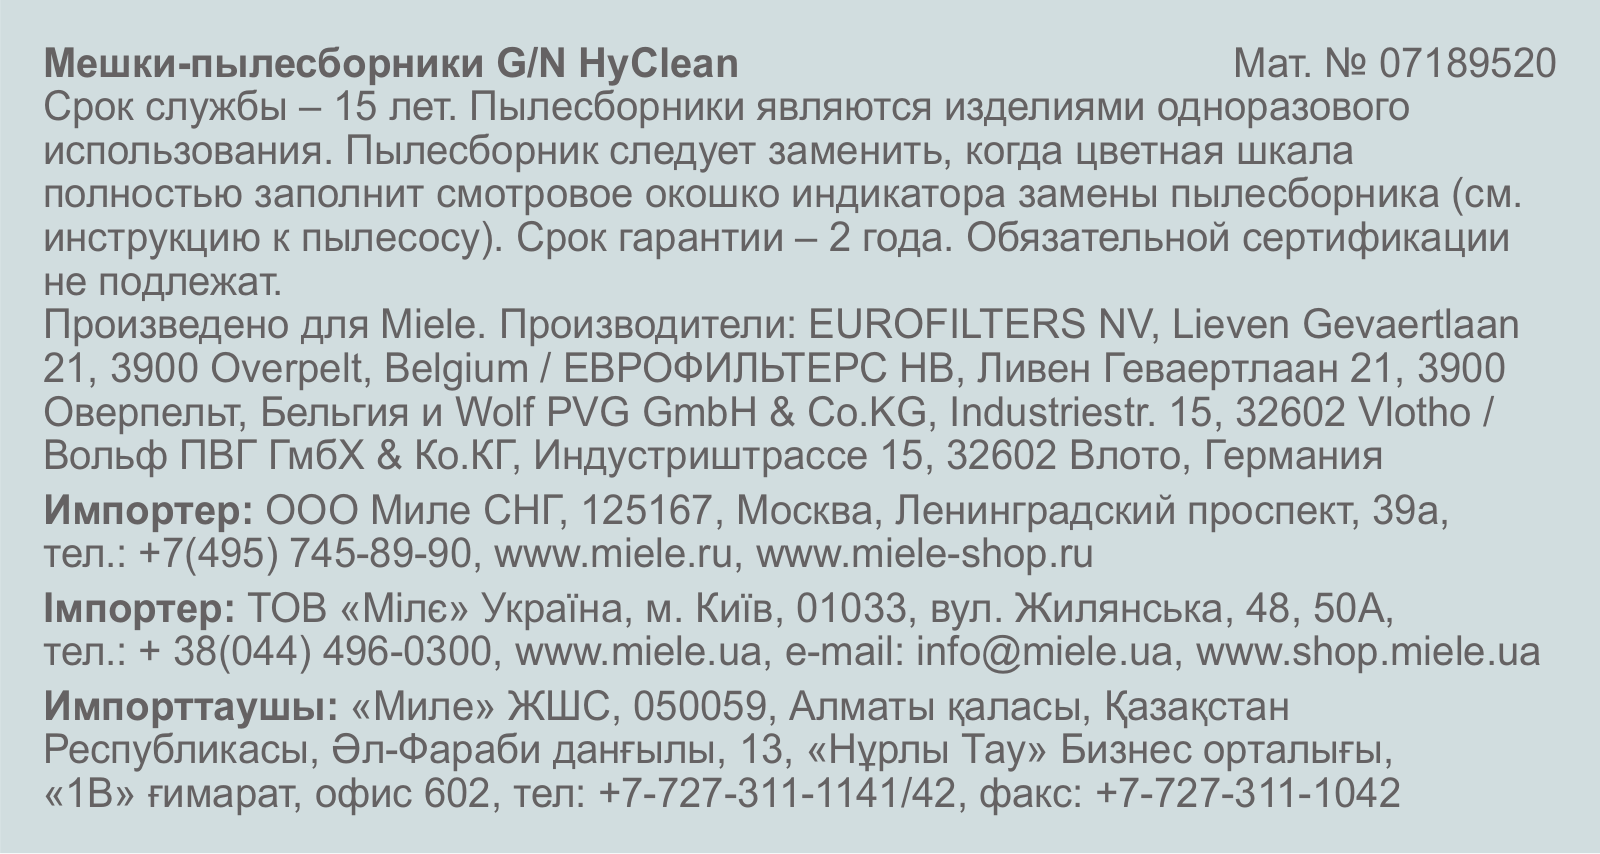 Miele G-N HyClean User Manual